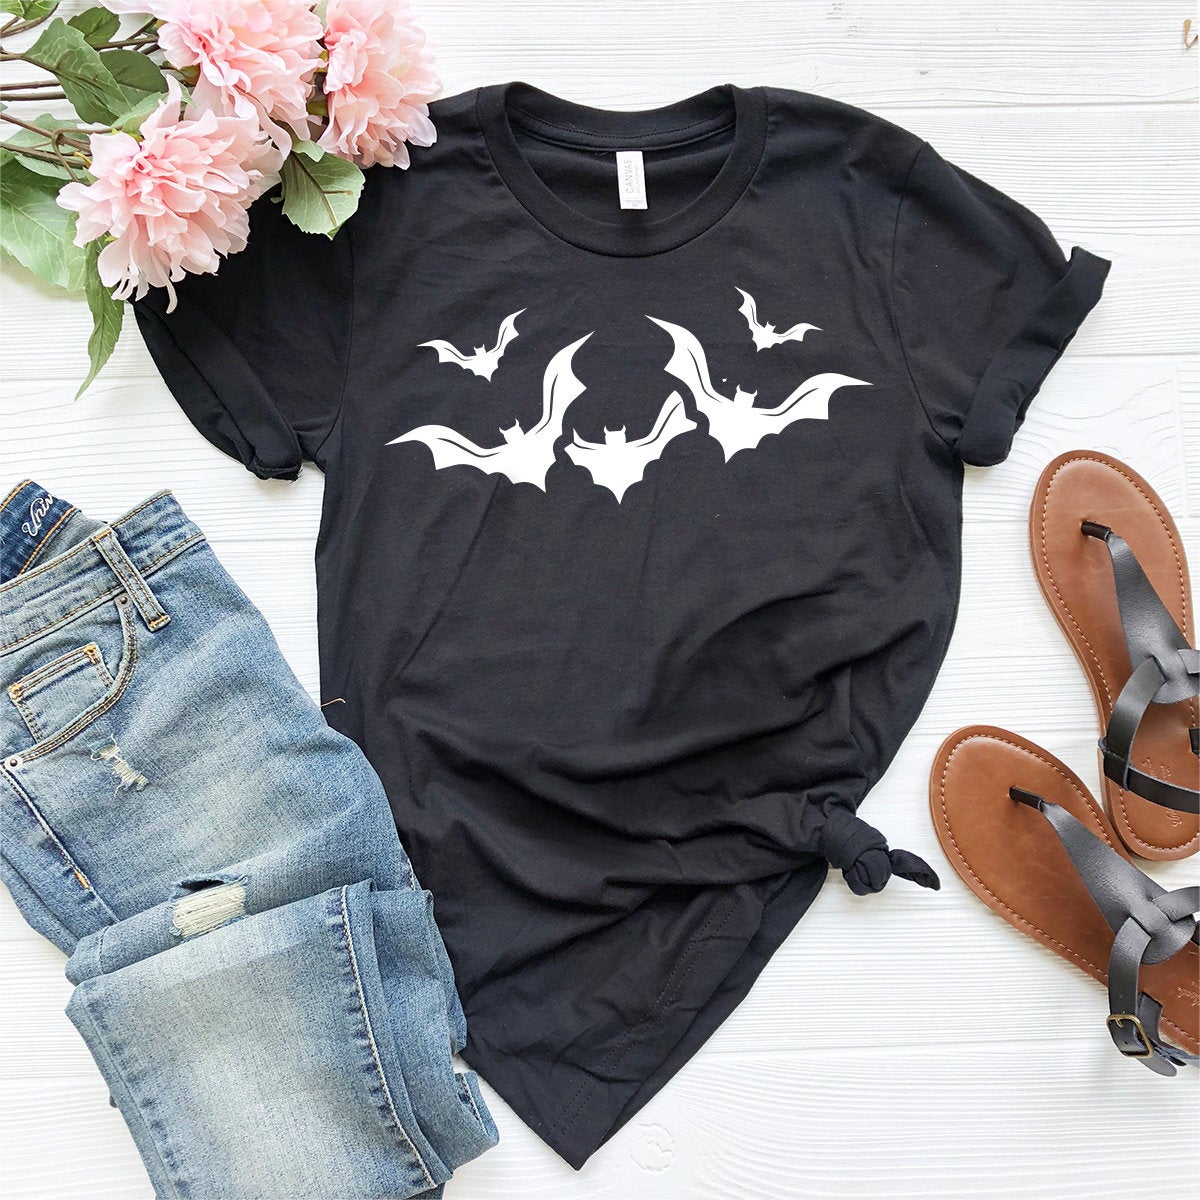 Halloween Bats Shirt, Halloween T-Shirt, Halloween Gift, Fall Shirt, Bats Shirt, Funny Halloween Shirt, Horror Shirt, Flying Bats Shirt - Fastdeliverytees.com